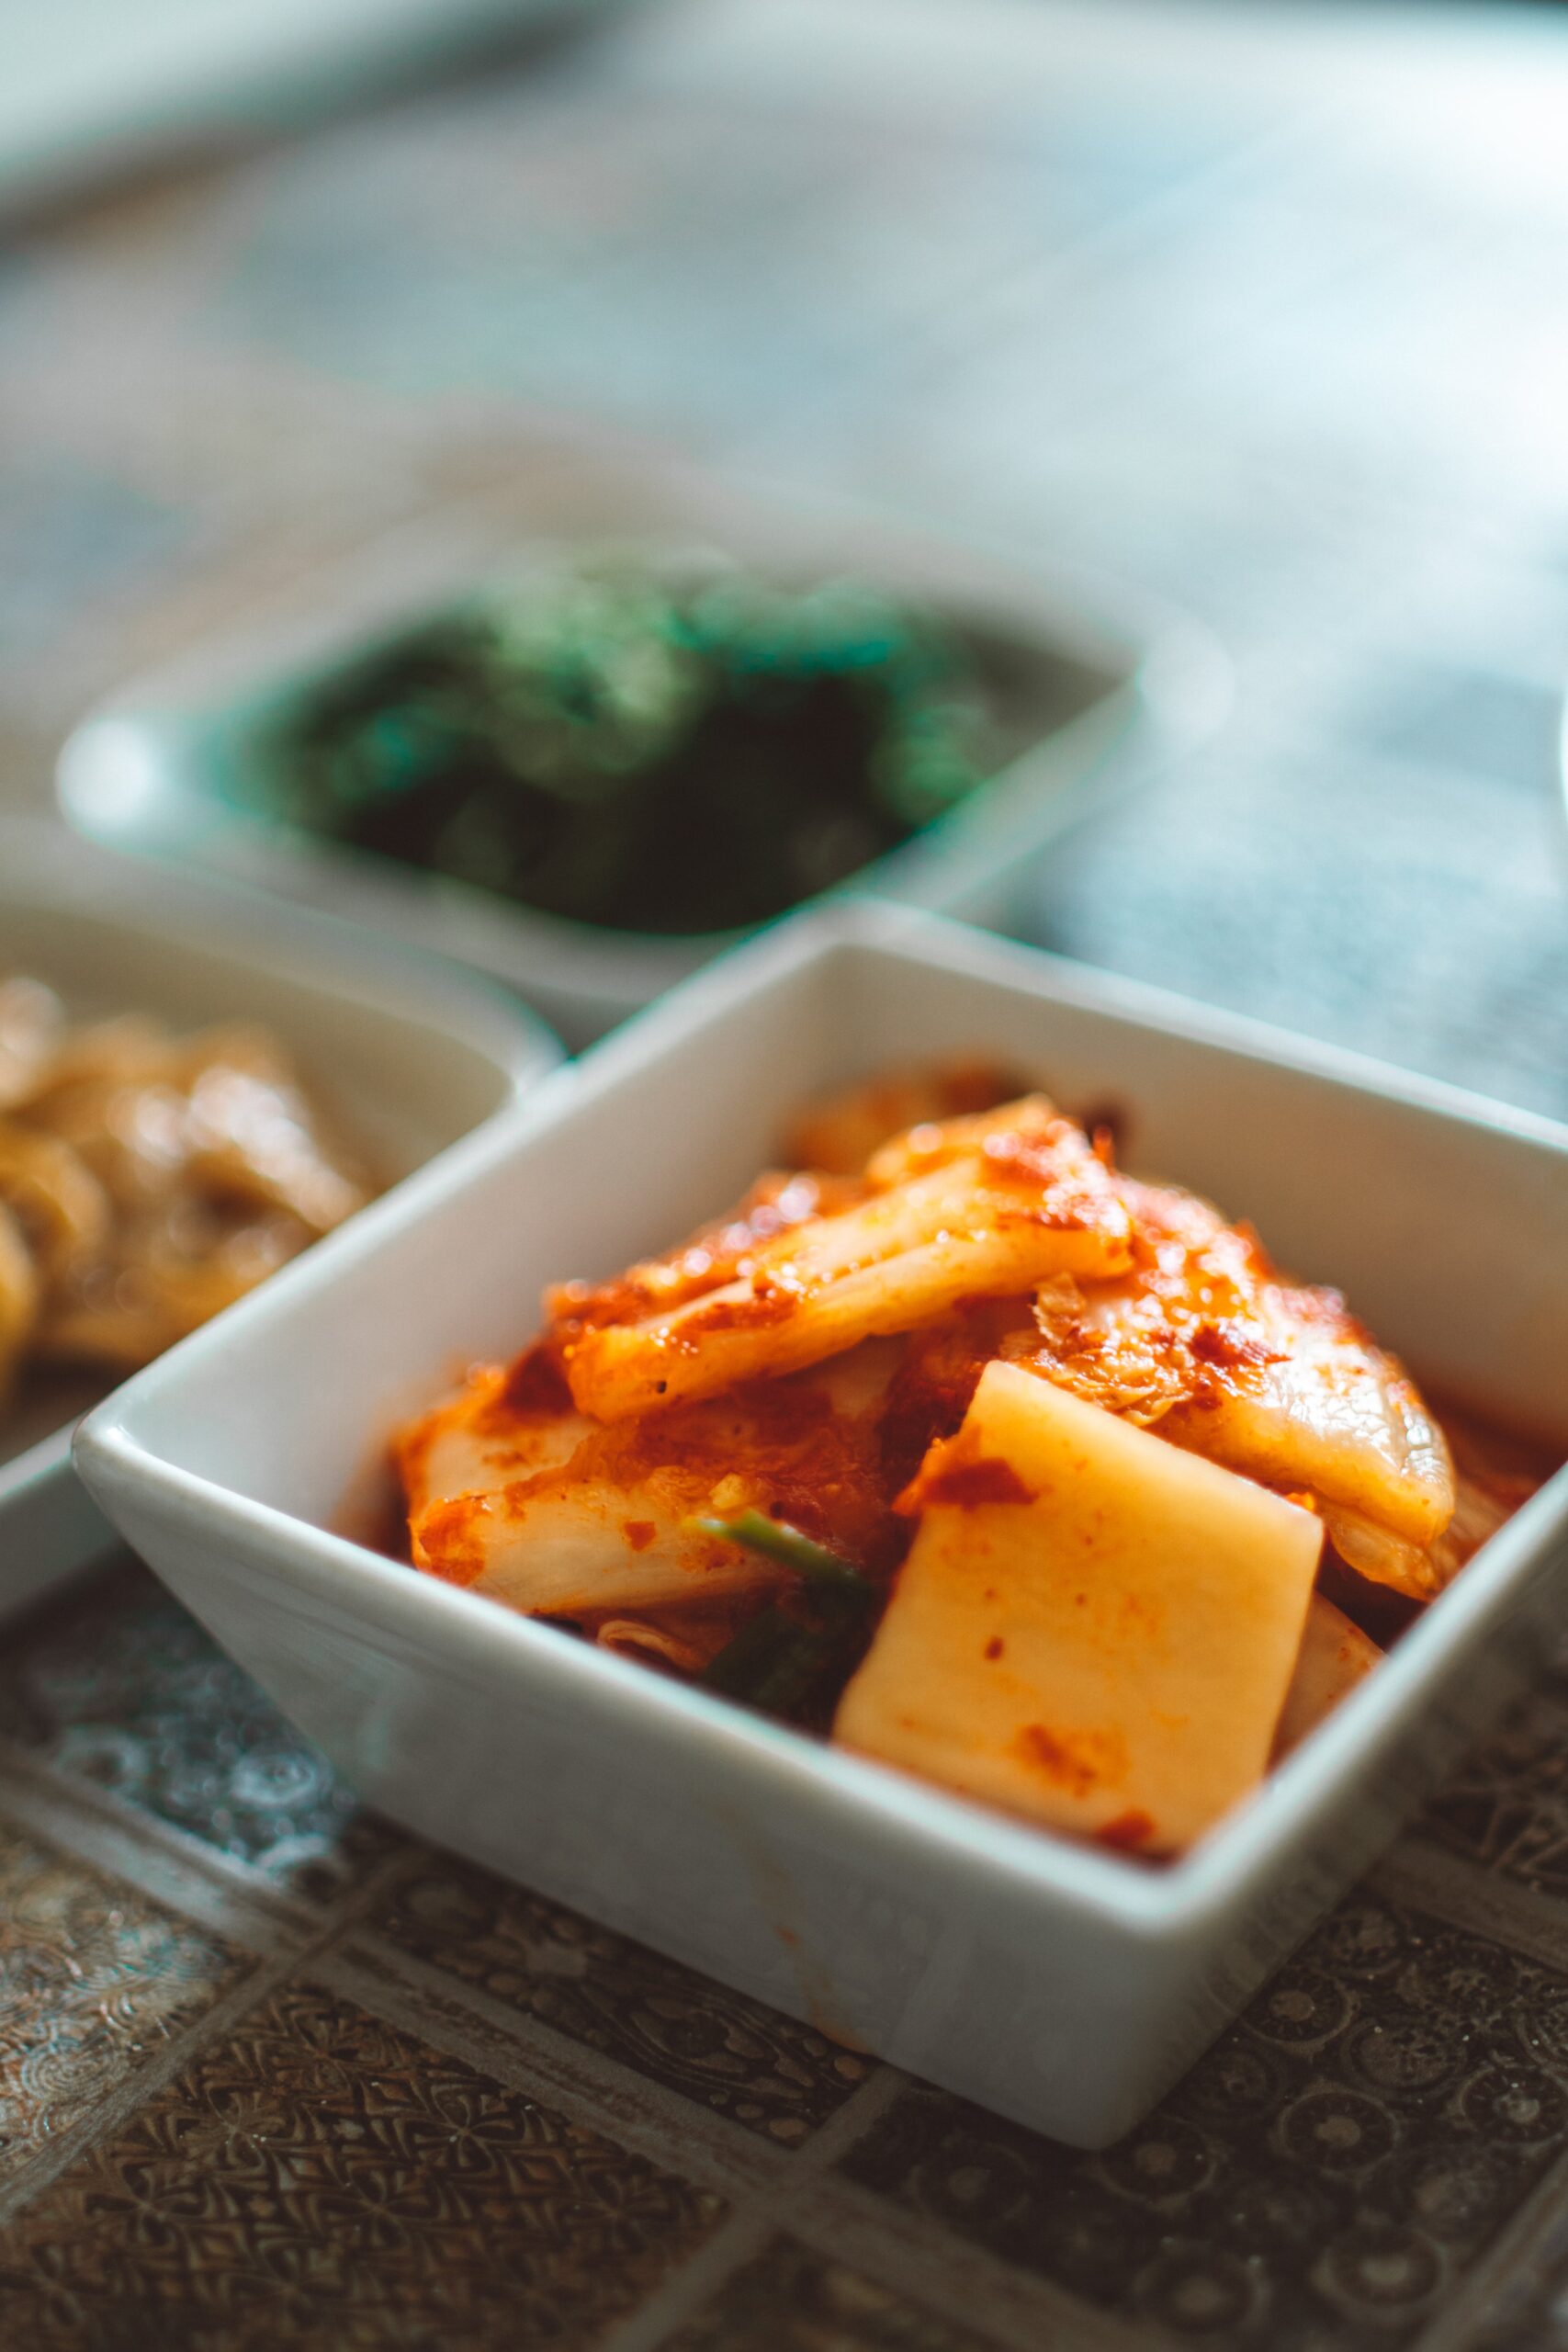 Kimchi - Napa Cabbage and Chive Kimchi